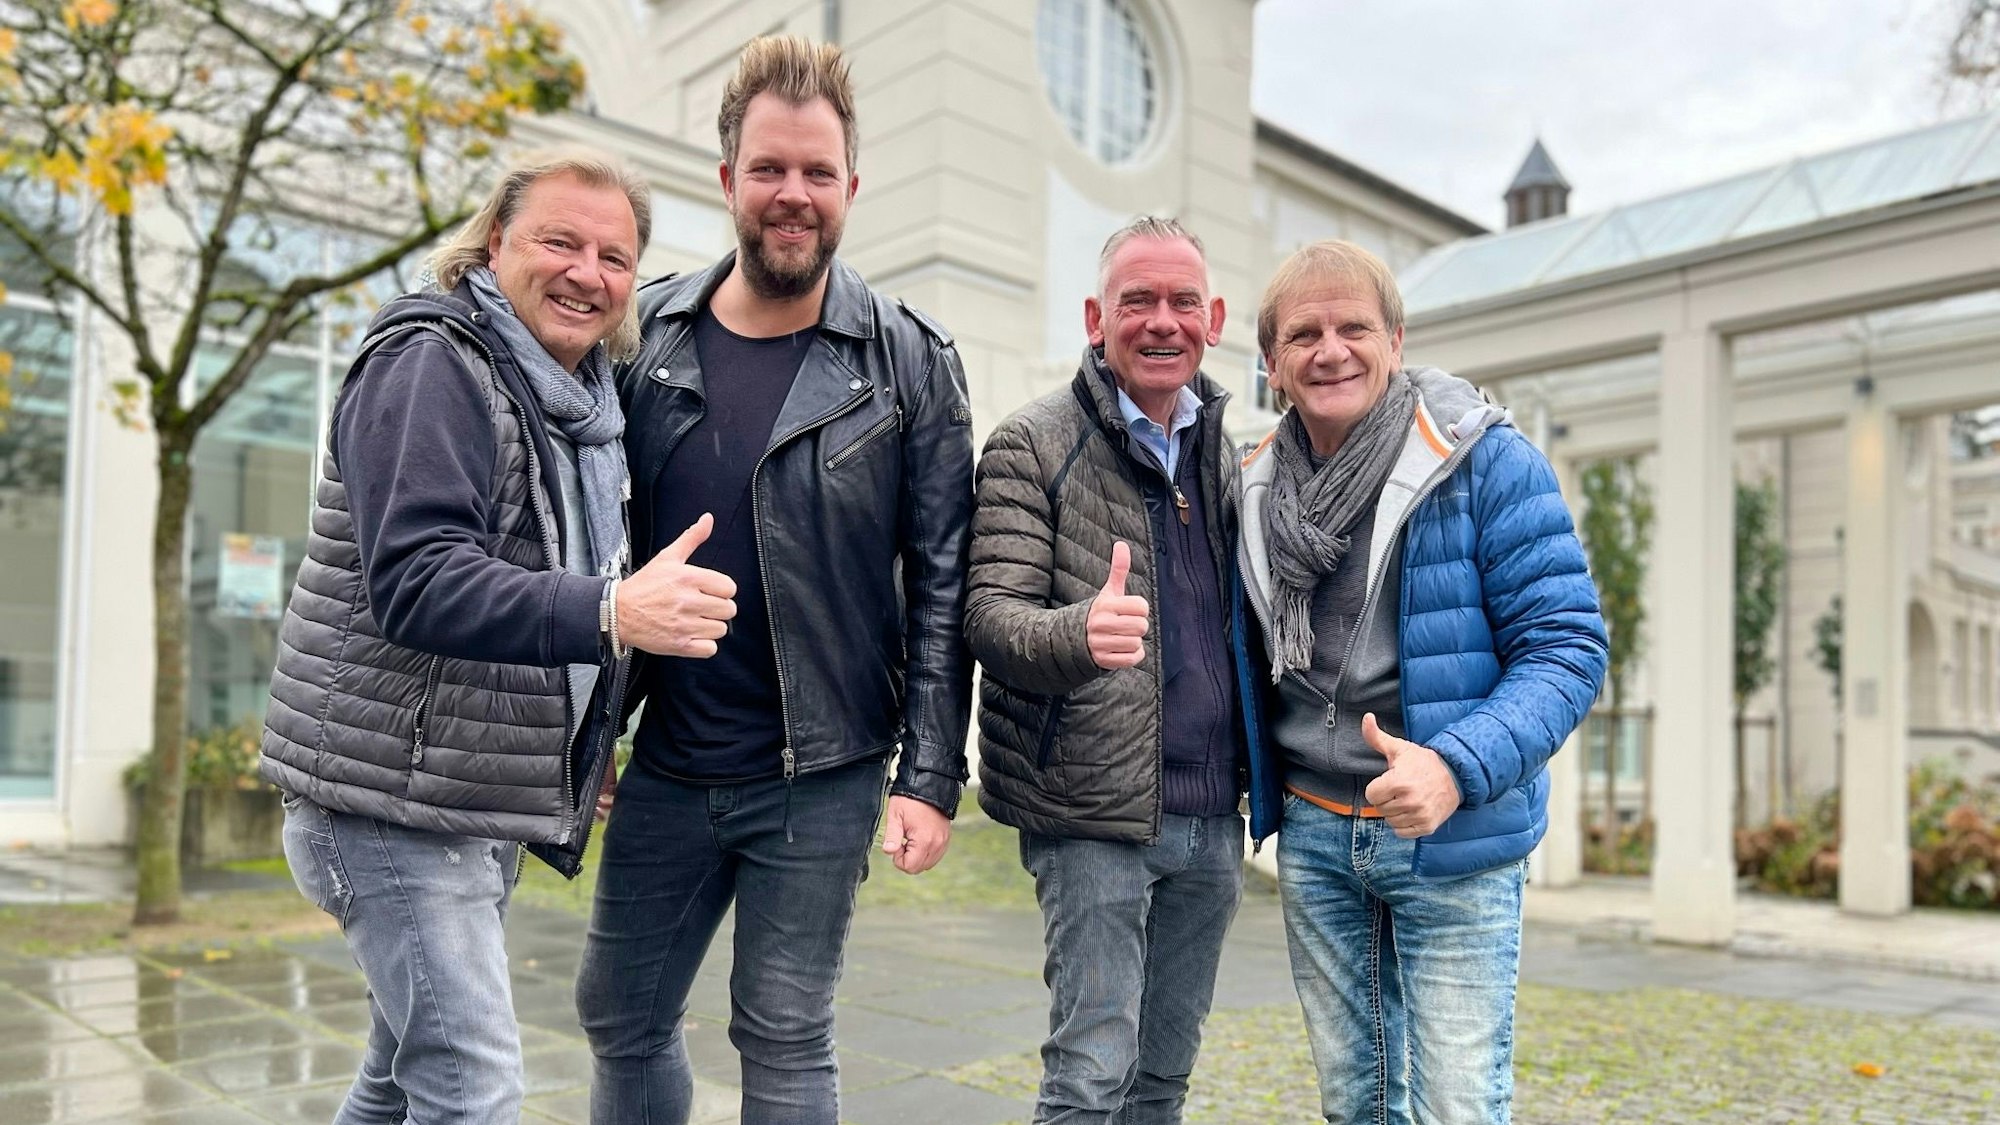 Die Paveier Bubi Brühl, Sven Welter, Klaus Lückerath und Jens Wilke von der KG Halt Pol (v.l.) posieren für die Kamera.